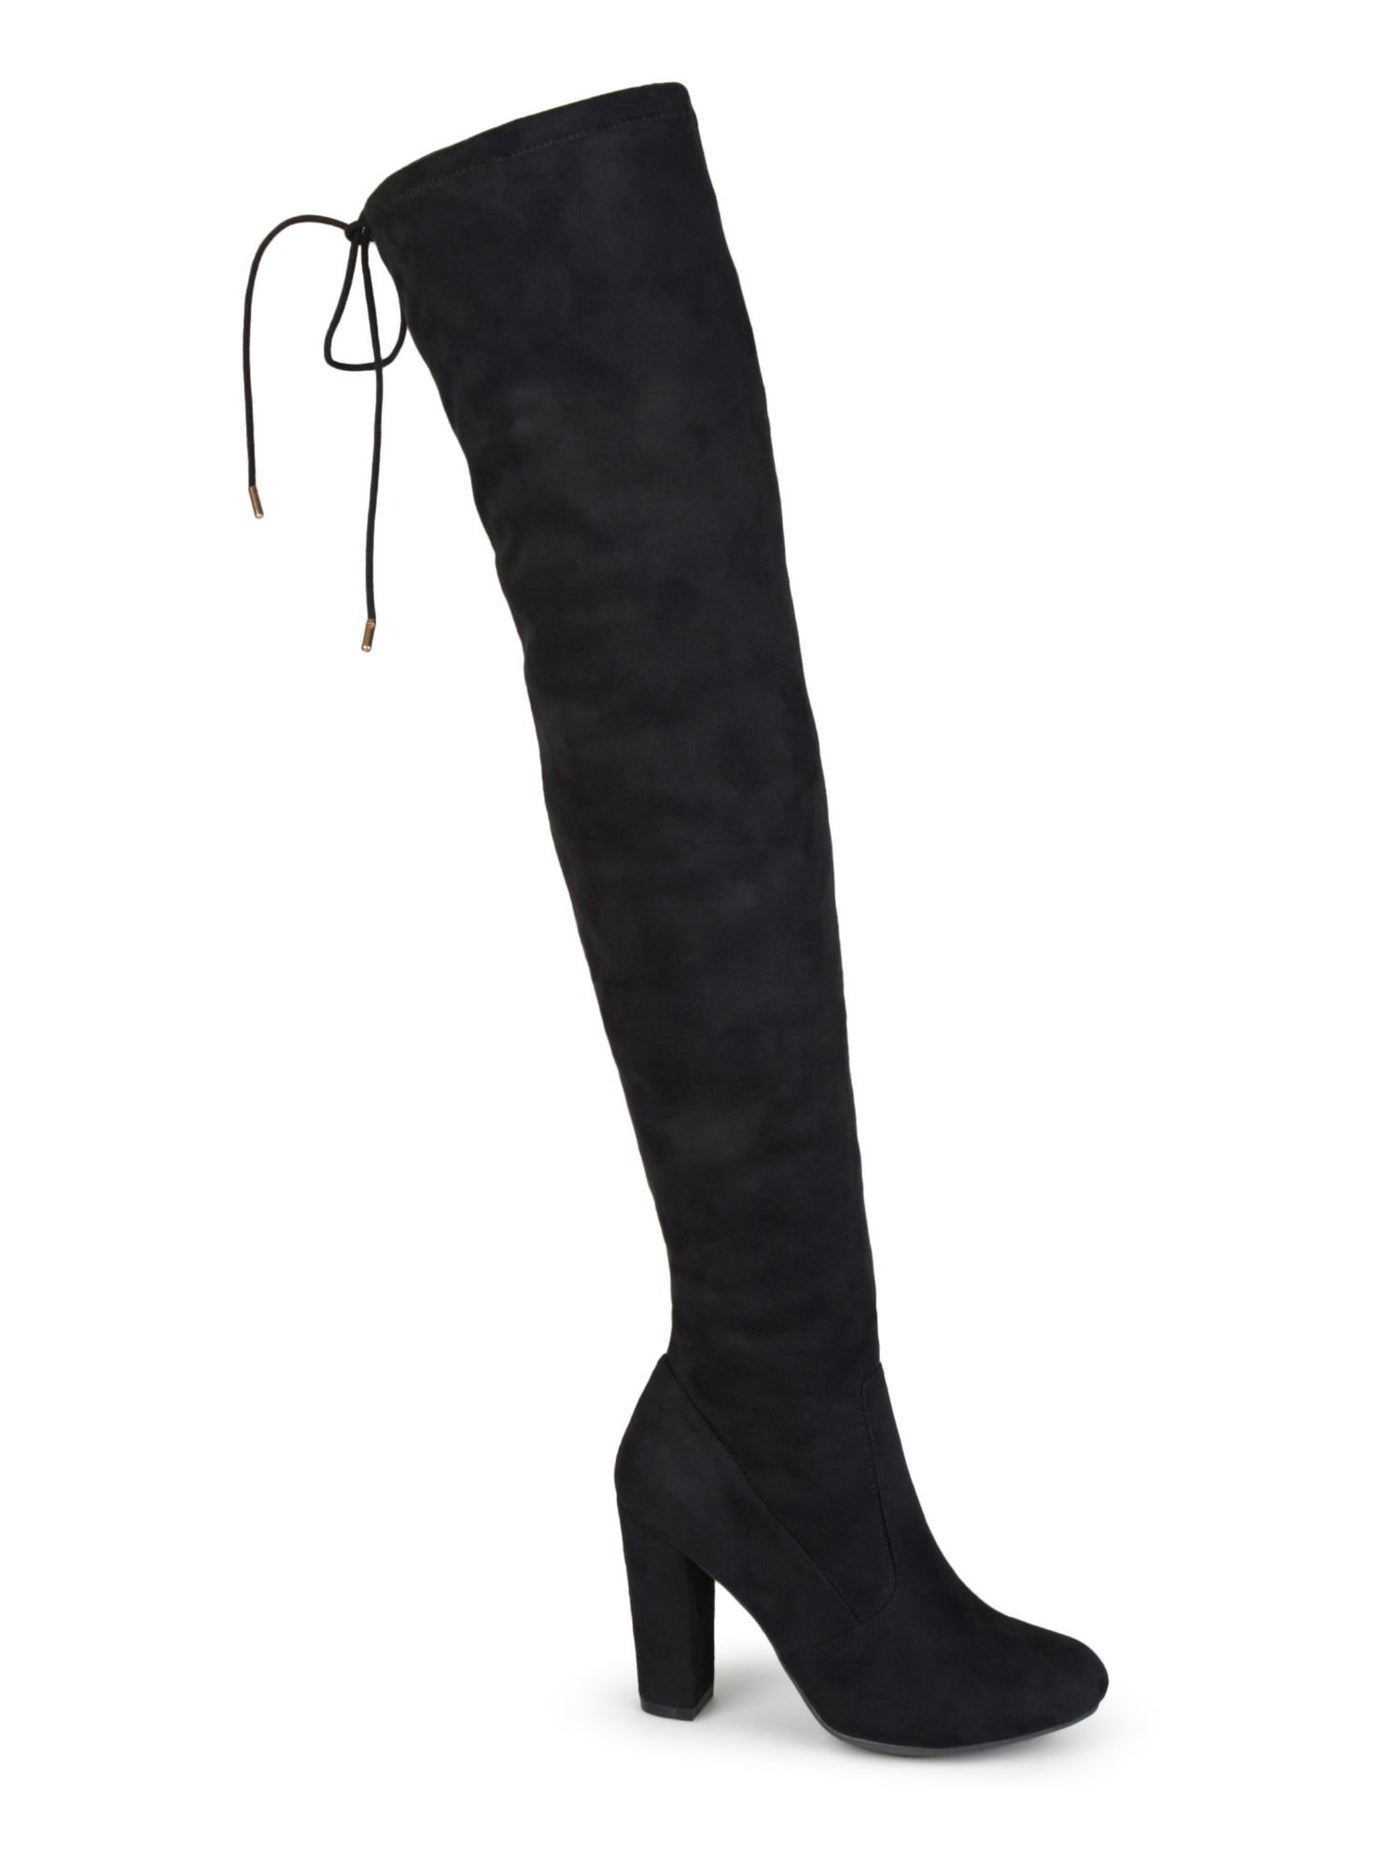 JOURNEE COLLECTION Womens Black Adjustable Tie Maya Round Toe Block Heel Zip-Up Dress Boots 10